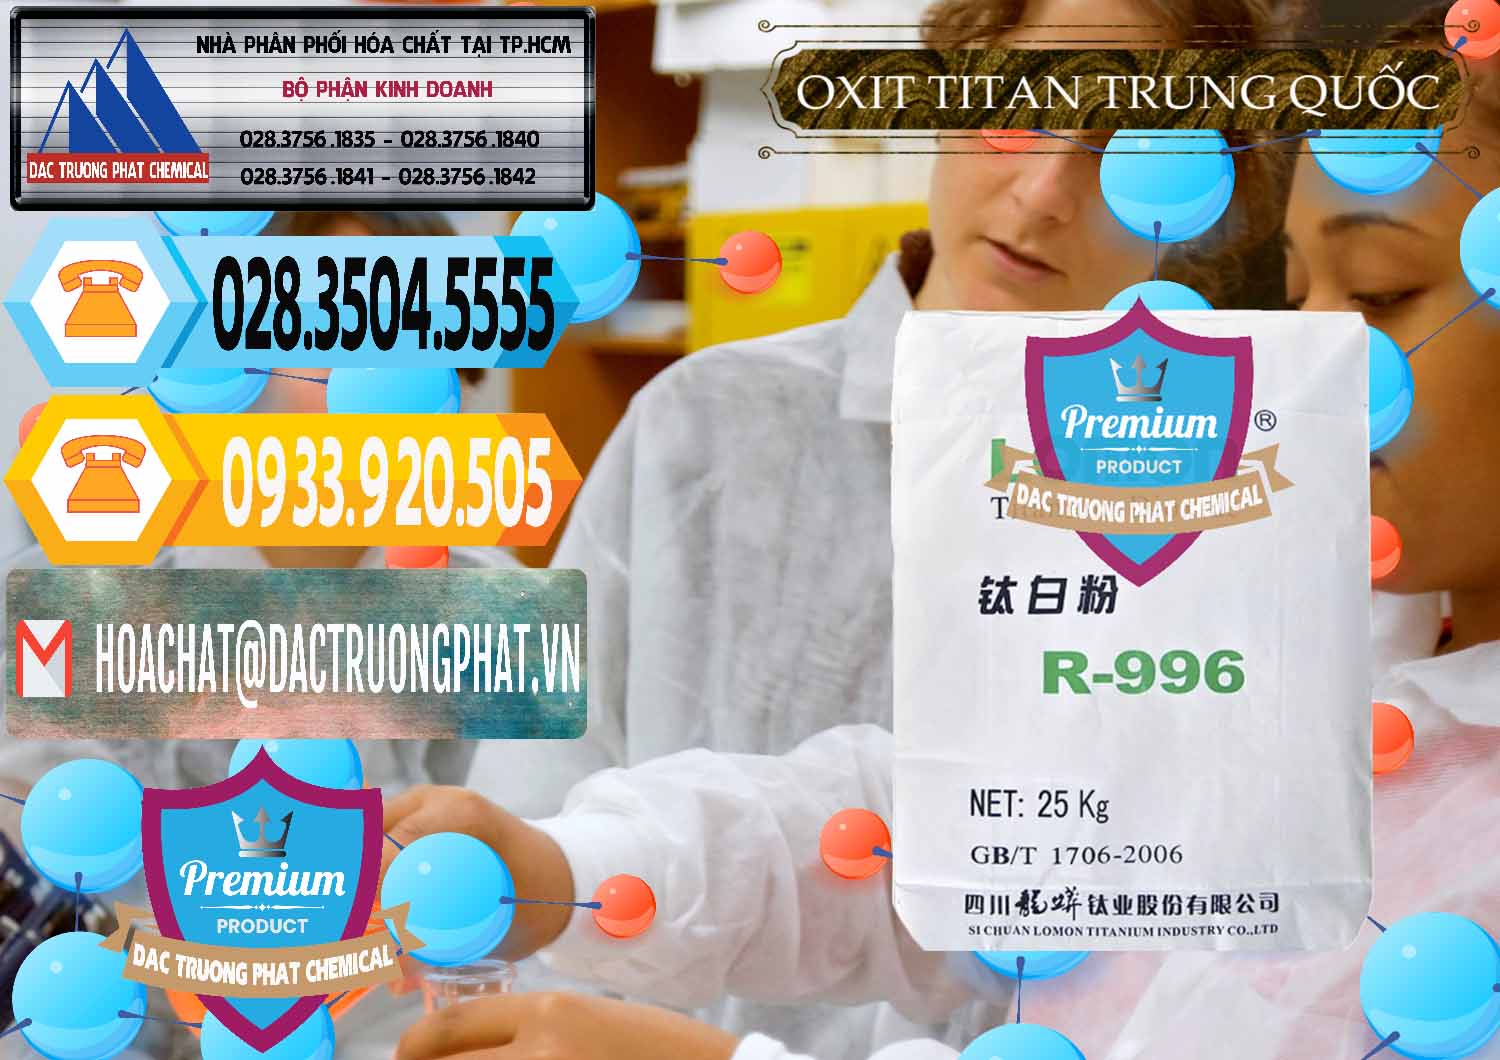 Công ty chuyên bán & cung cấp Oxit Titan KA100 – Tio2 Trung Quốc China - 0398 - Cty phân phối ( cung cấp ) hóa chất tại TP.HCM - hoachattayrua.net